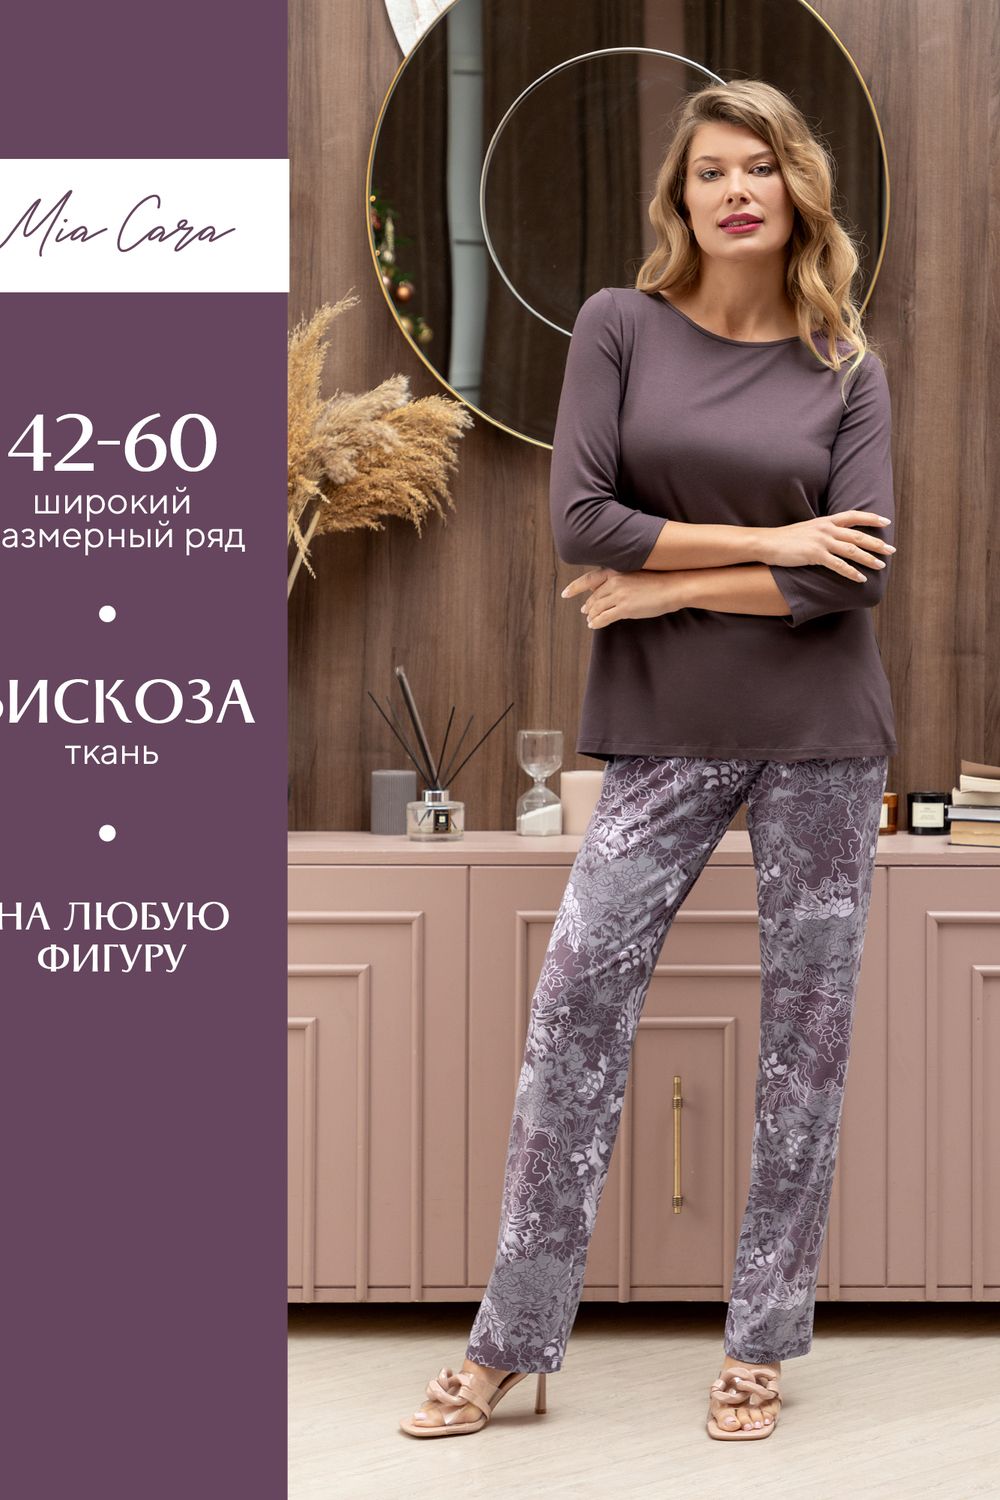 Комплект жен: фуфайка (футболка) д/рук, брюки пижамные Mia Cara AW22WJ361 Rosa Del Te сливовый цветы - сливовый